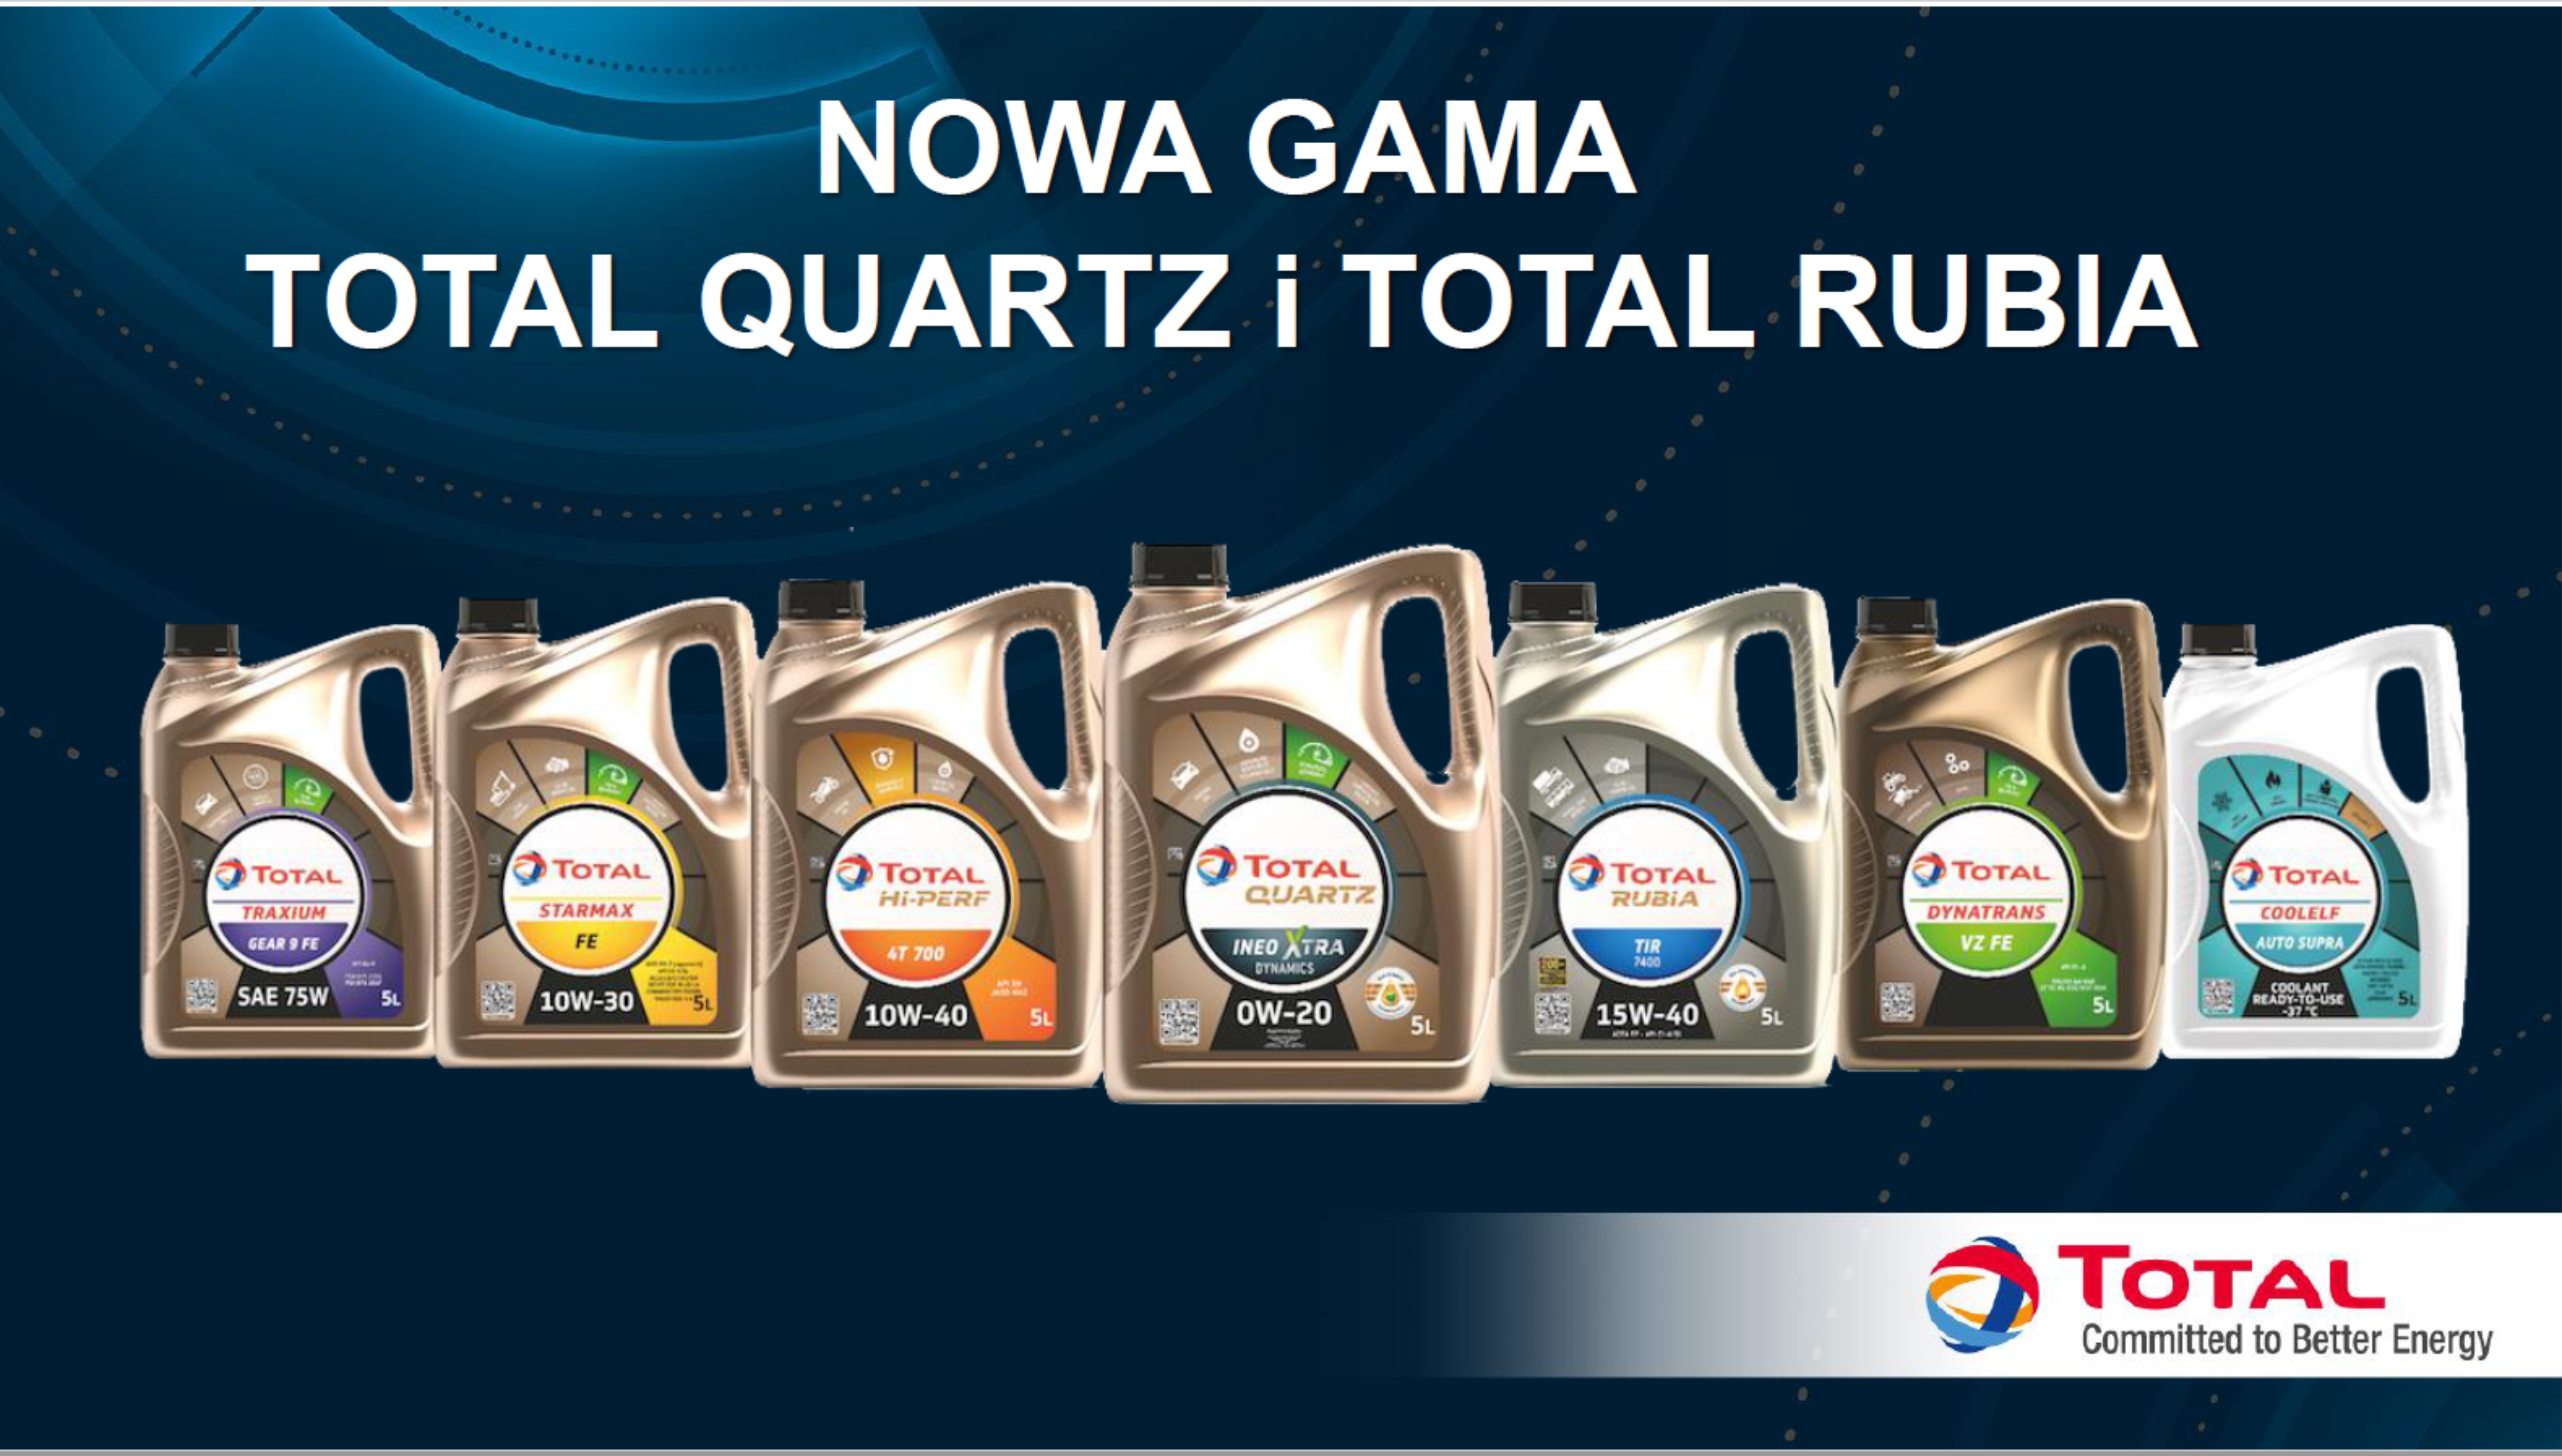 Nowa gama produktów Total Quartz i Total Rubia